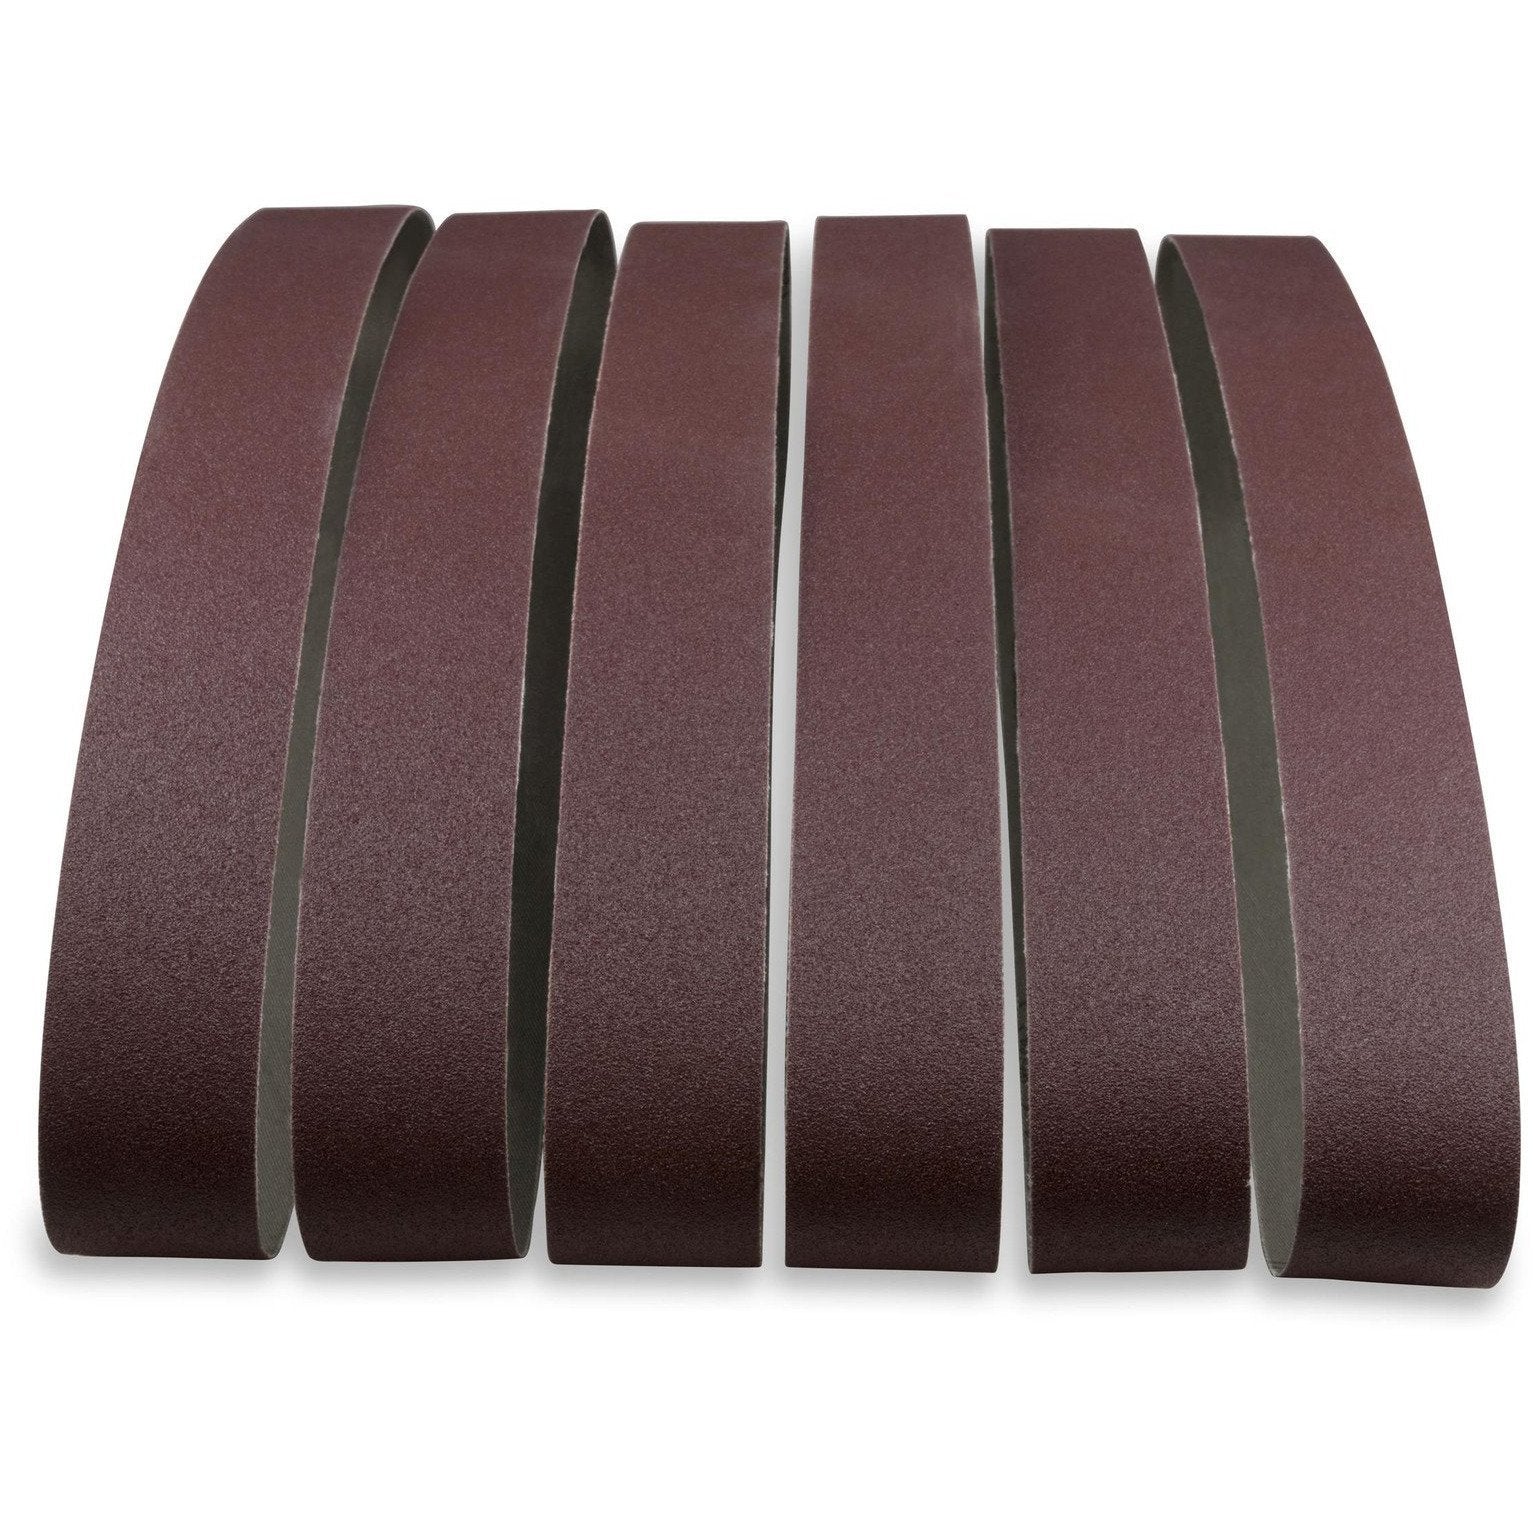 1 X 42 Inch Aluminum Oxide Sanding Belts, 12 Pack - Red Label Abrasives